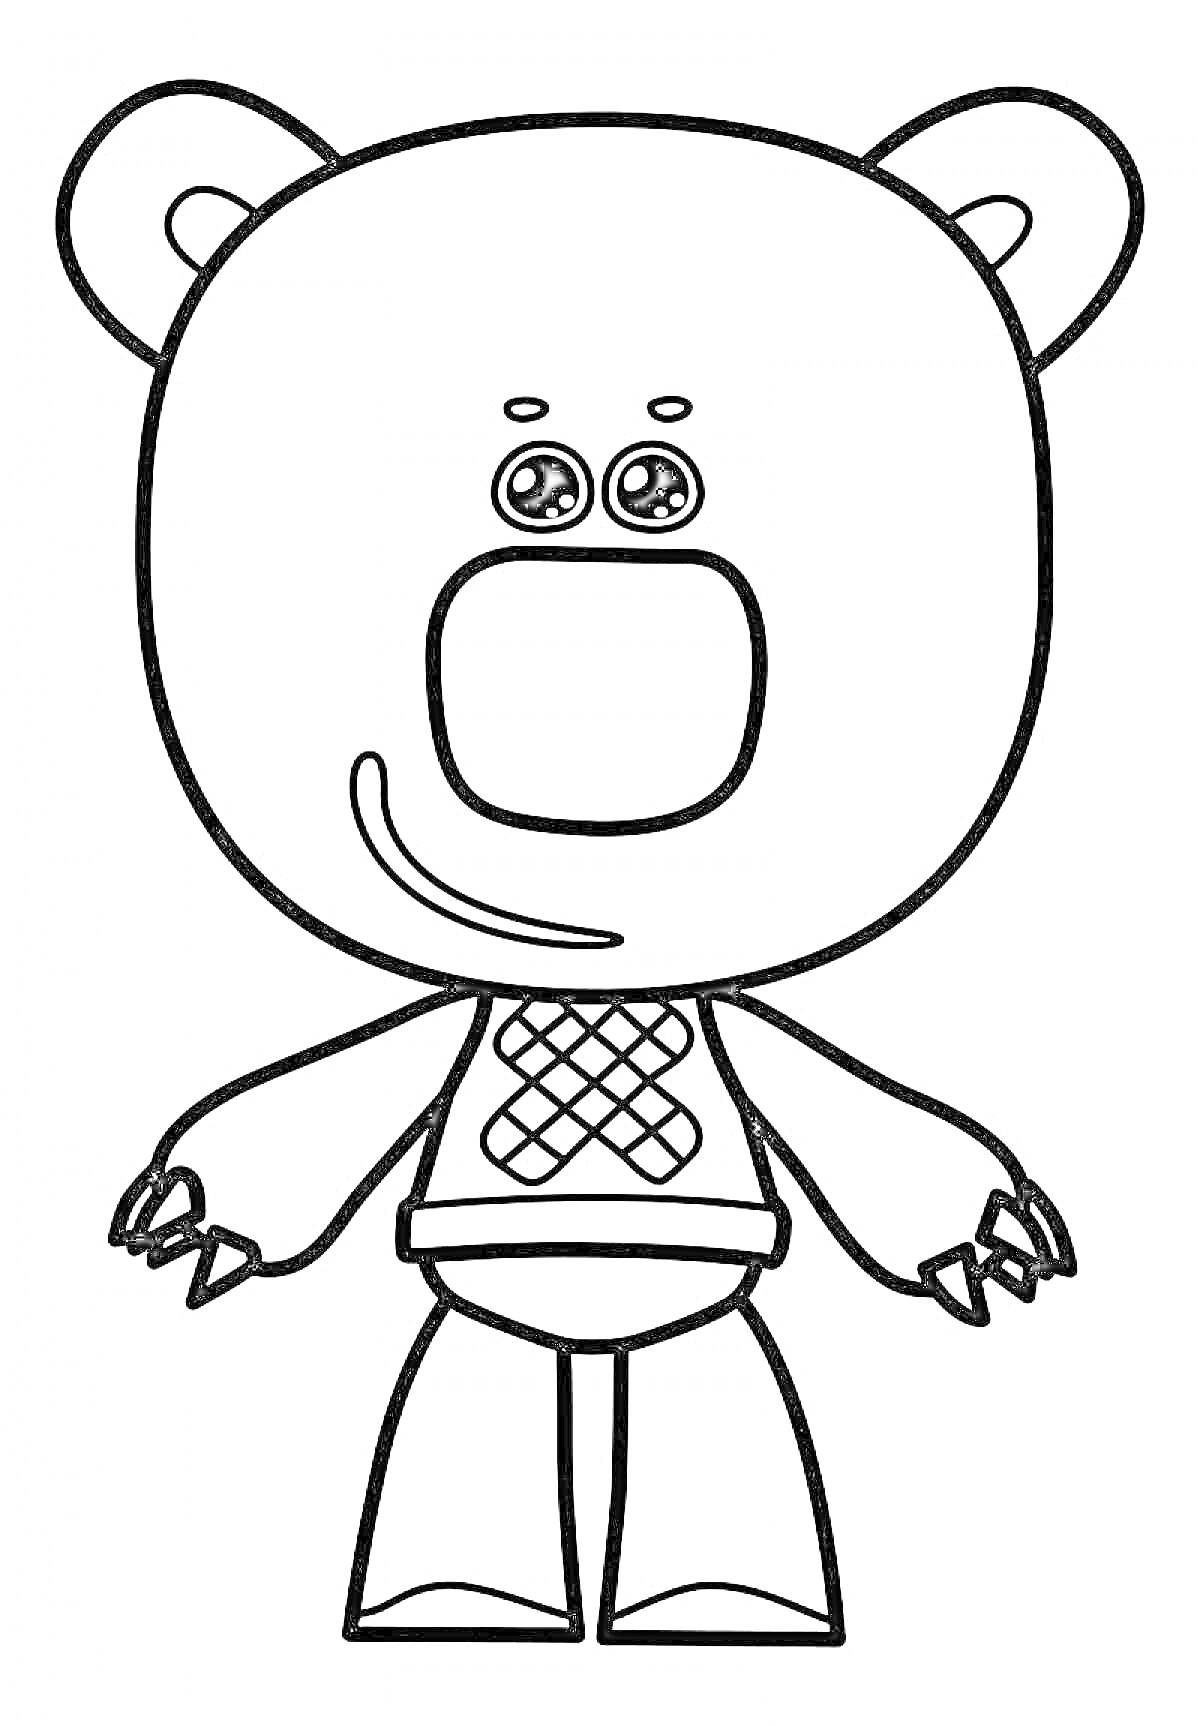 Раскраска Мишка с круглой головой и ушами, с большими глазами, в костюме с ромбическим узором на животе, изображение раскраски